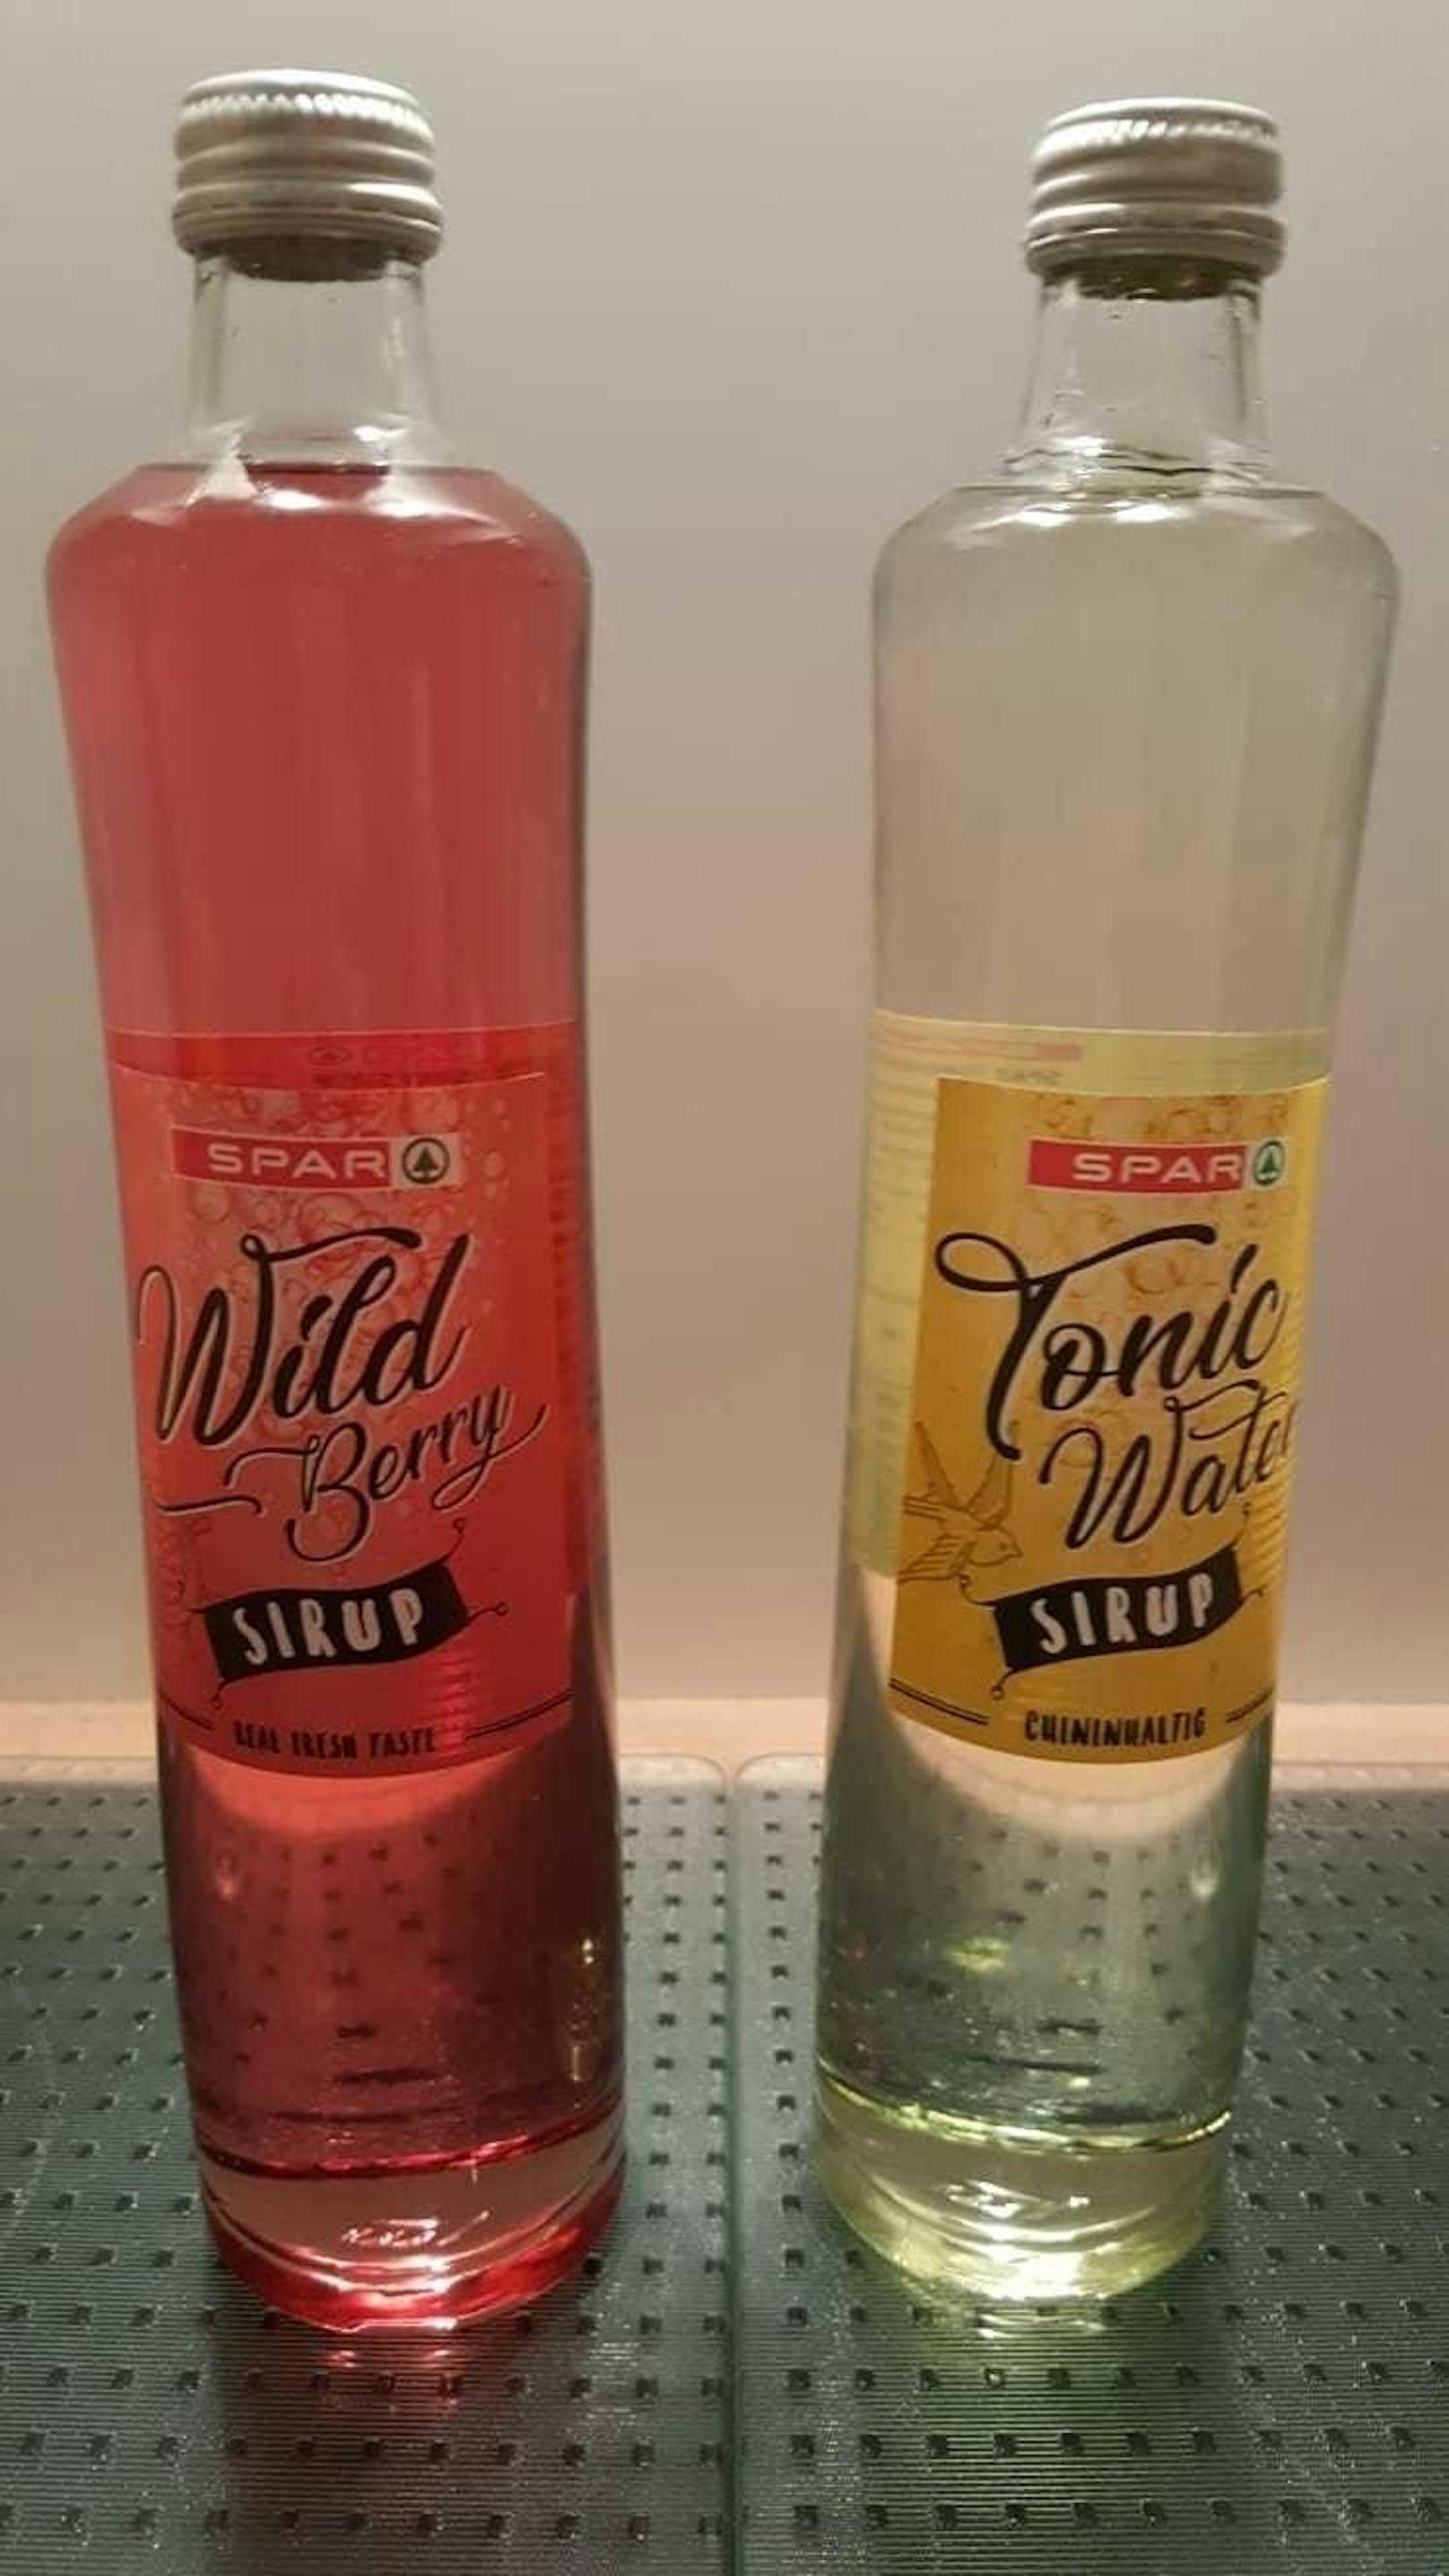 Die neuen Sirup-Sorten "Wild Berry" und "Tonic Water".